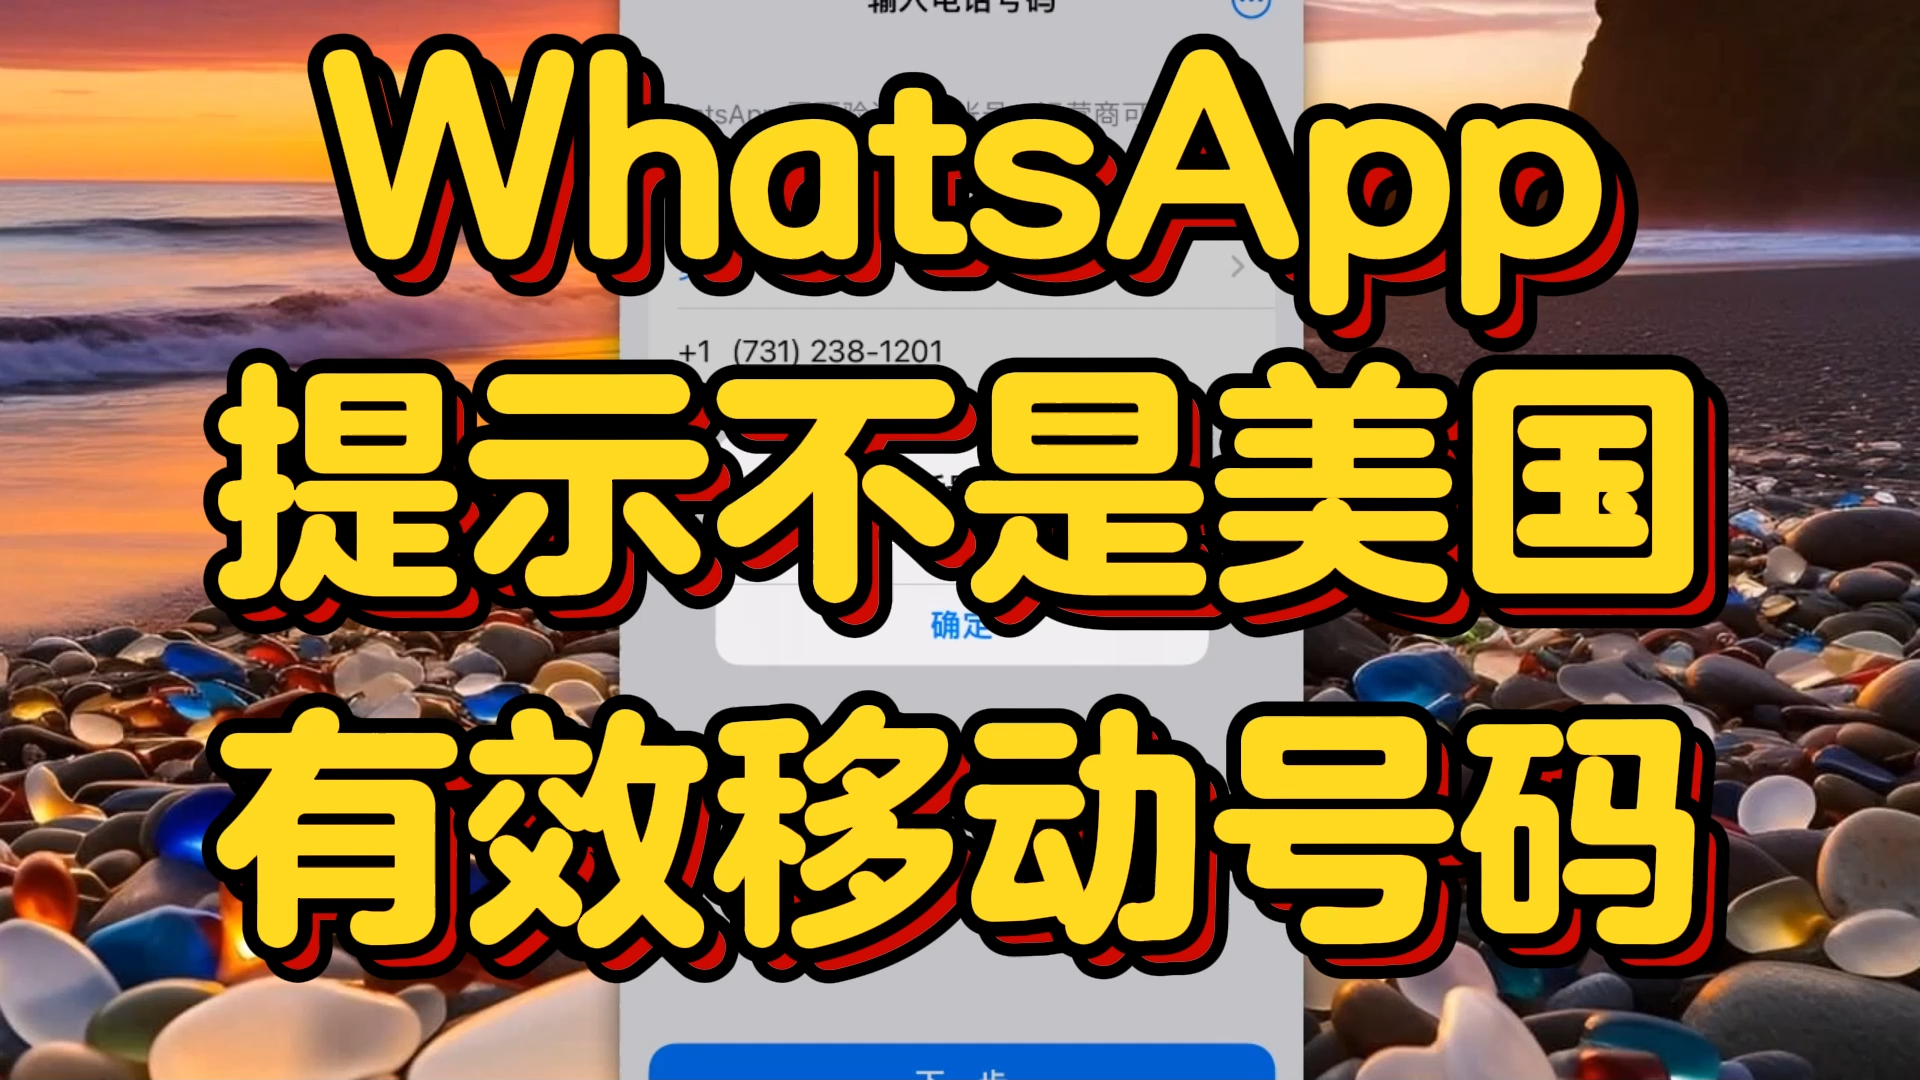 whatsapp中文官网下载_whatsapp官方中文正版_whatsapp中文版